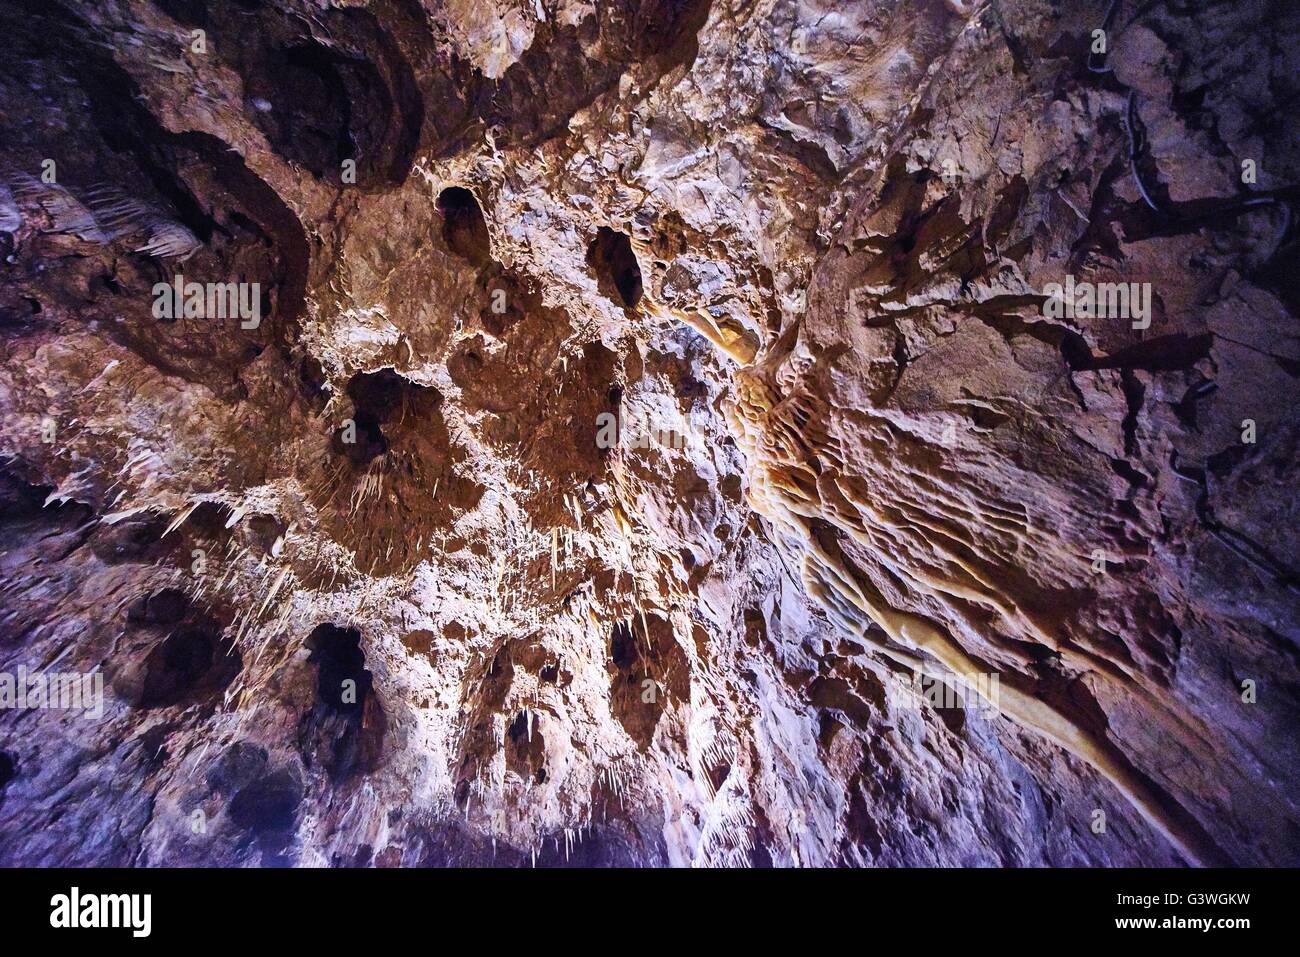 Im Inneren der Höhle, die alte und schöne schönes Bild Stockfoto